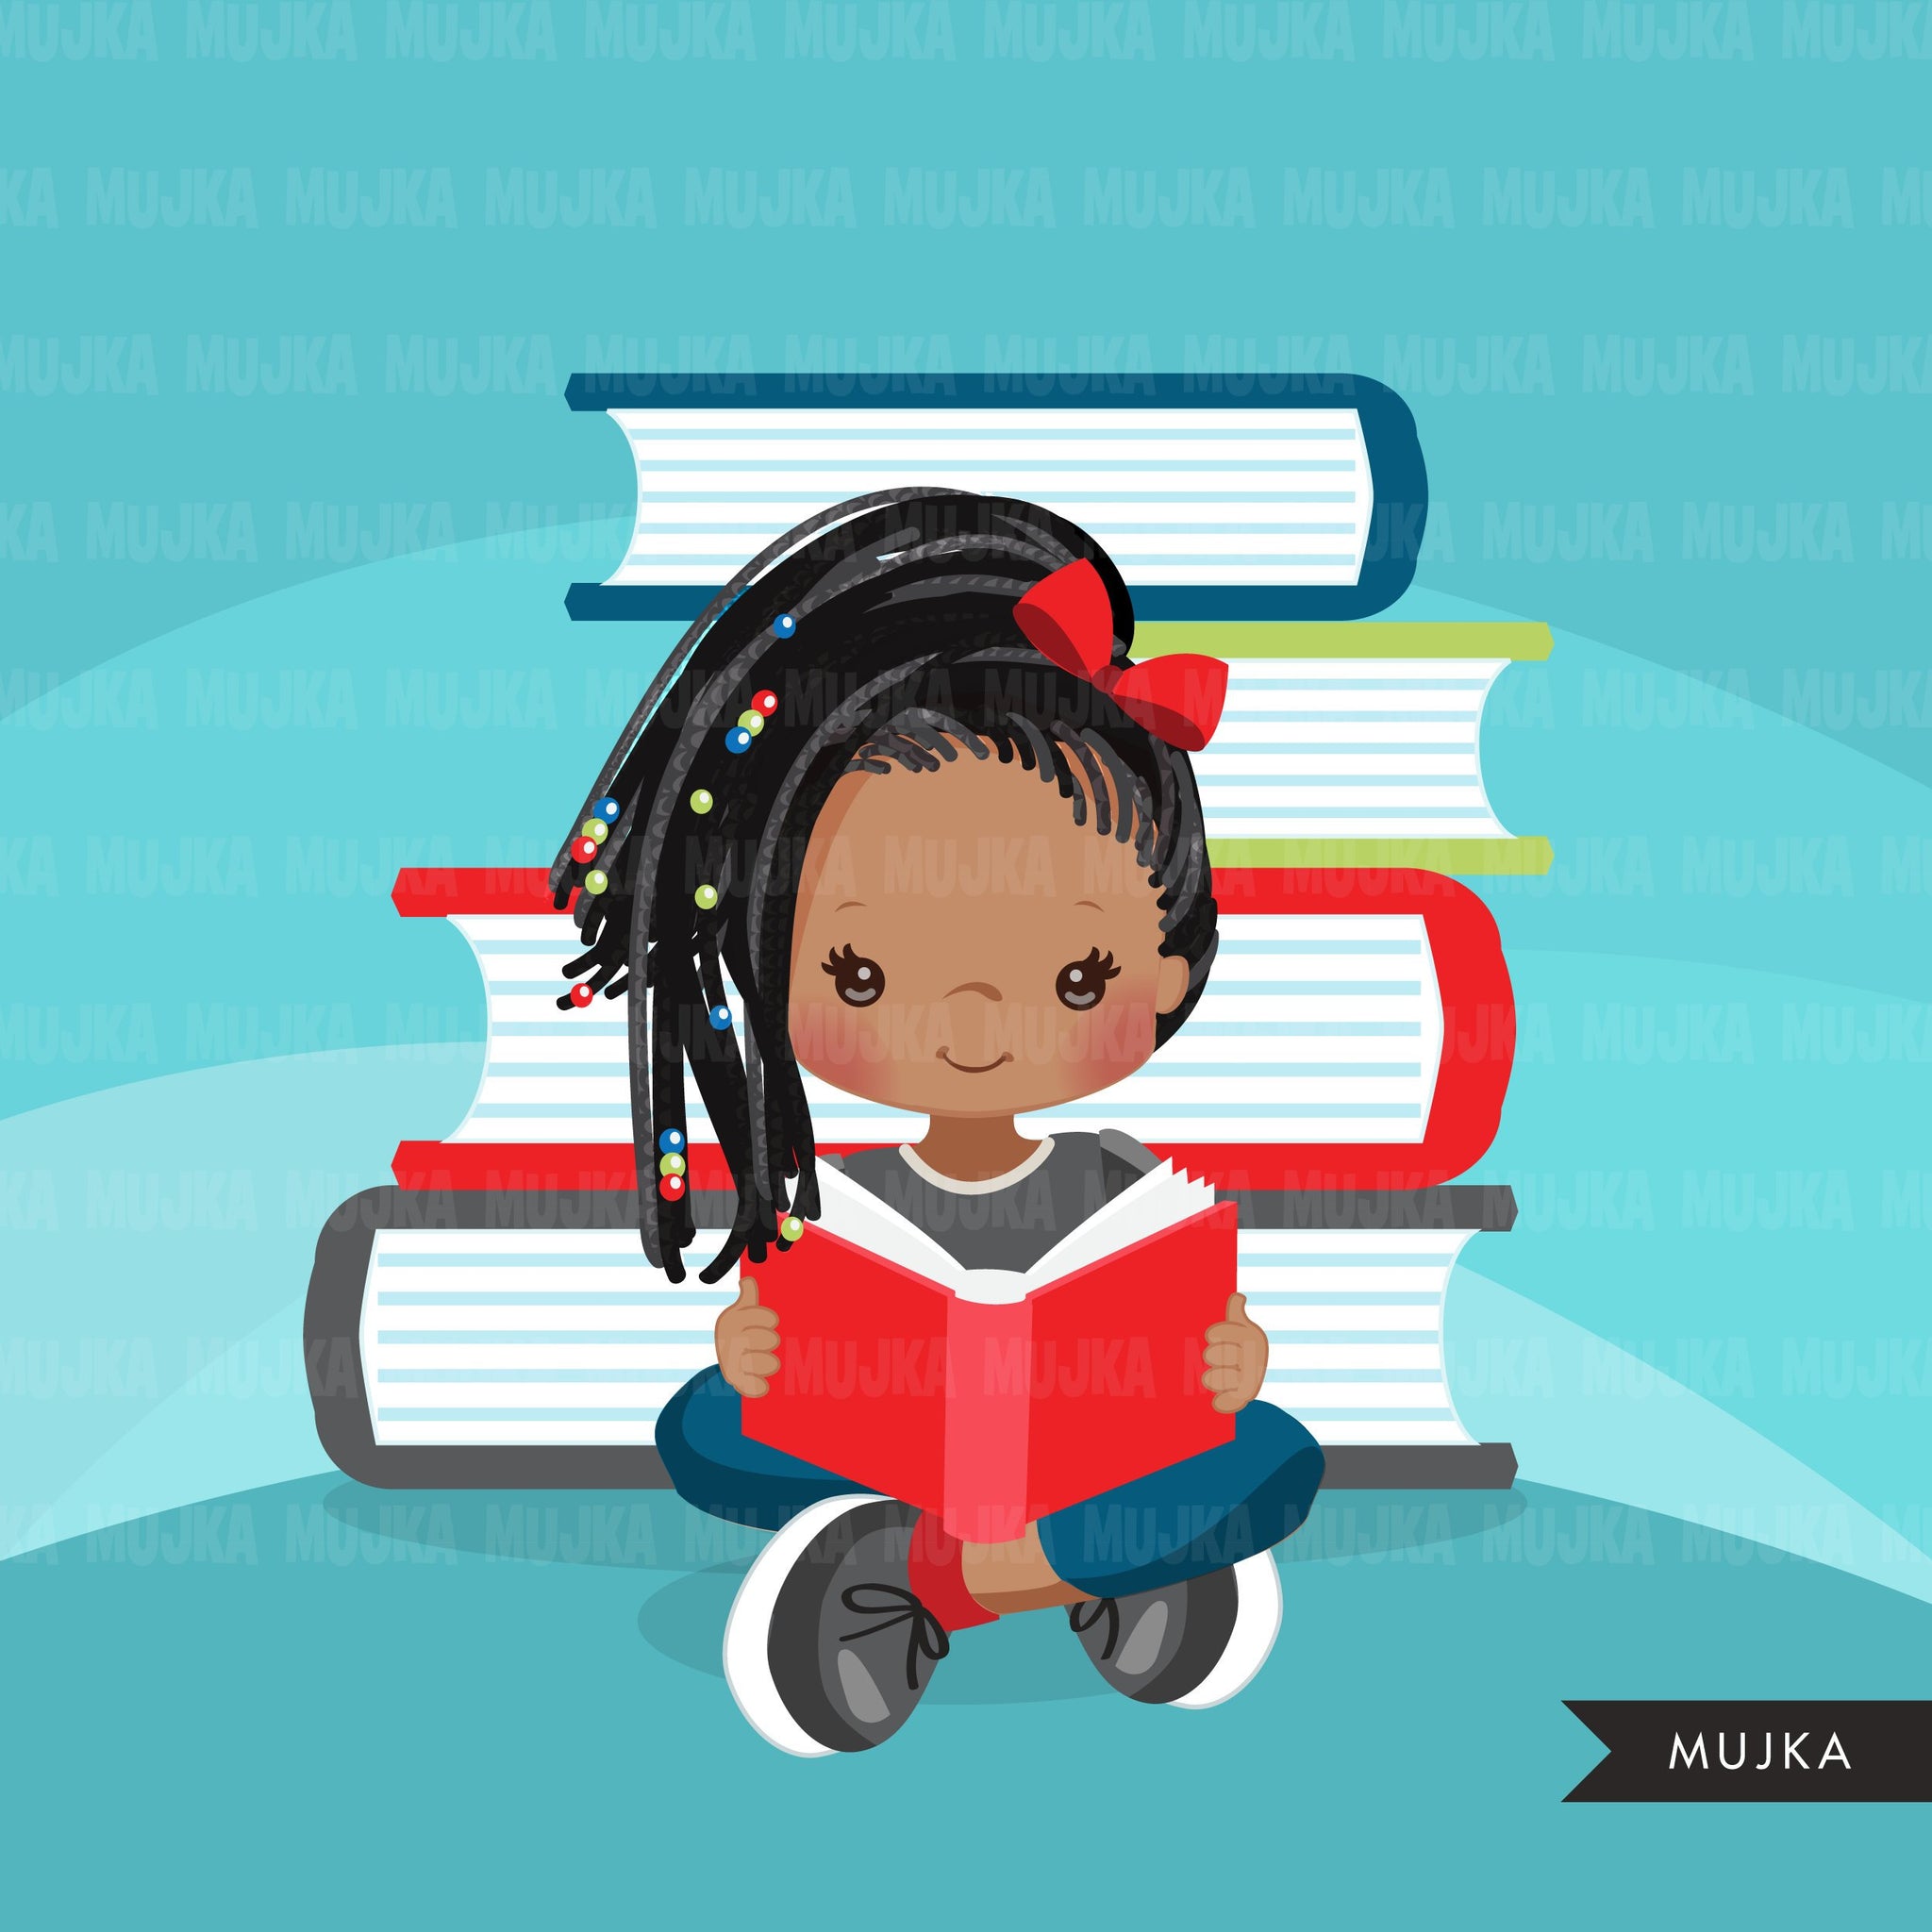 little black girl reading